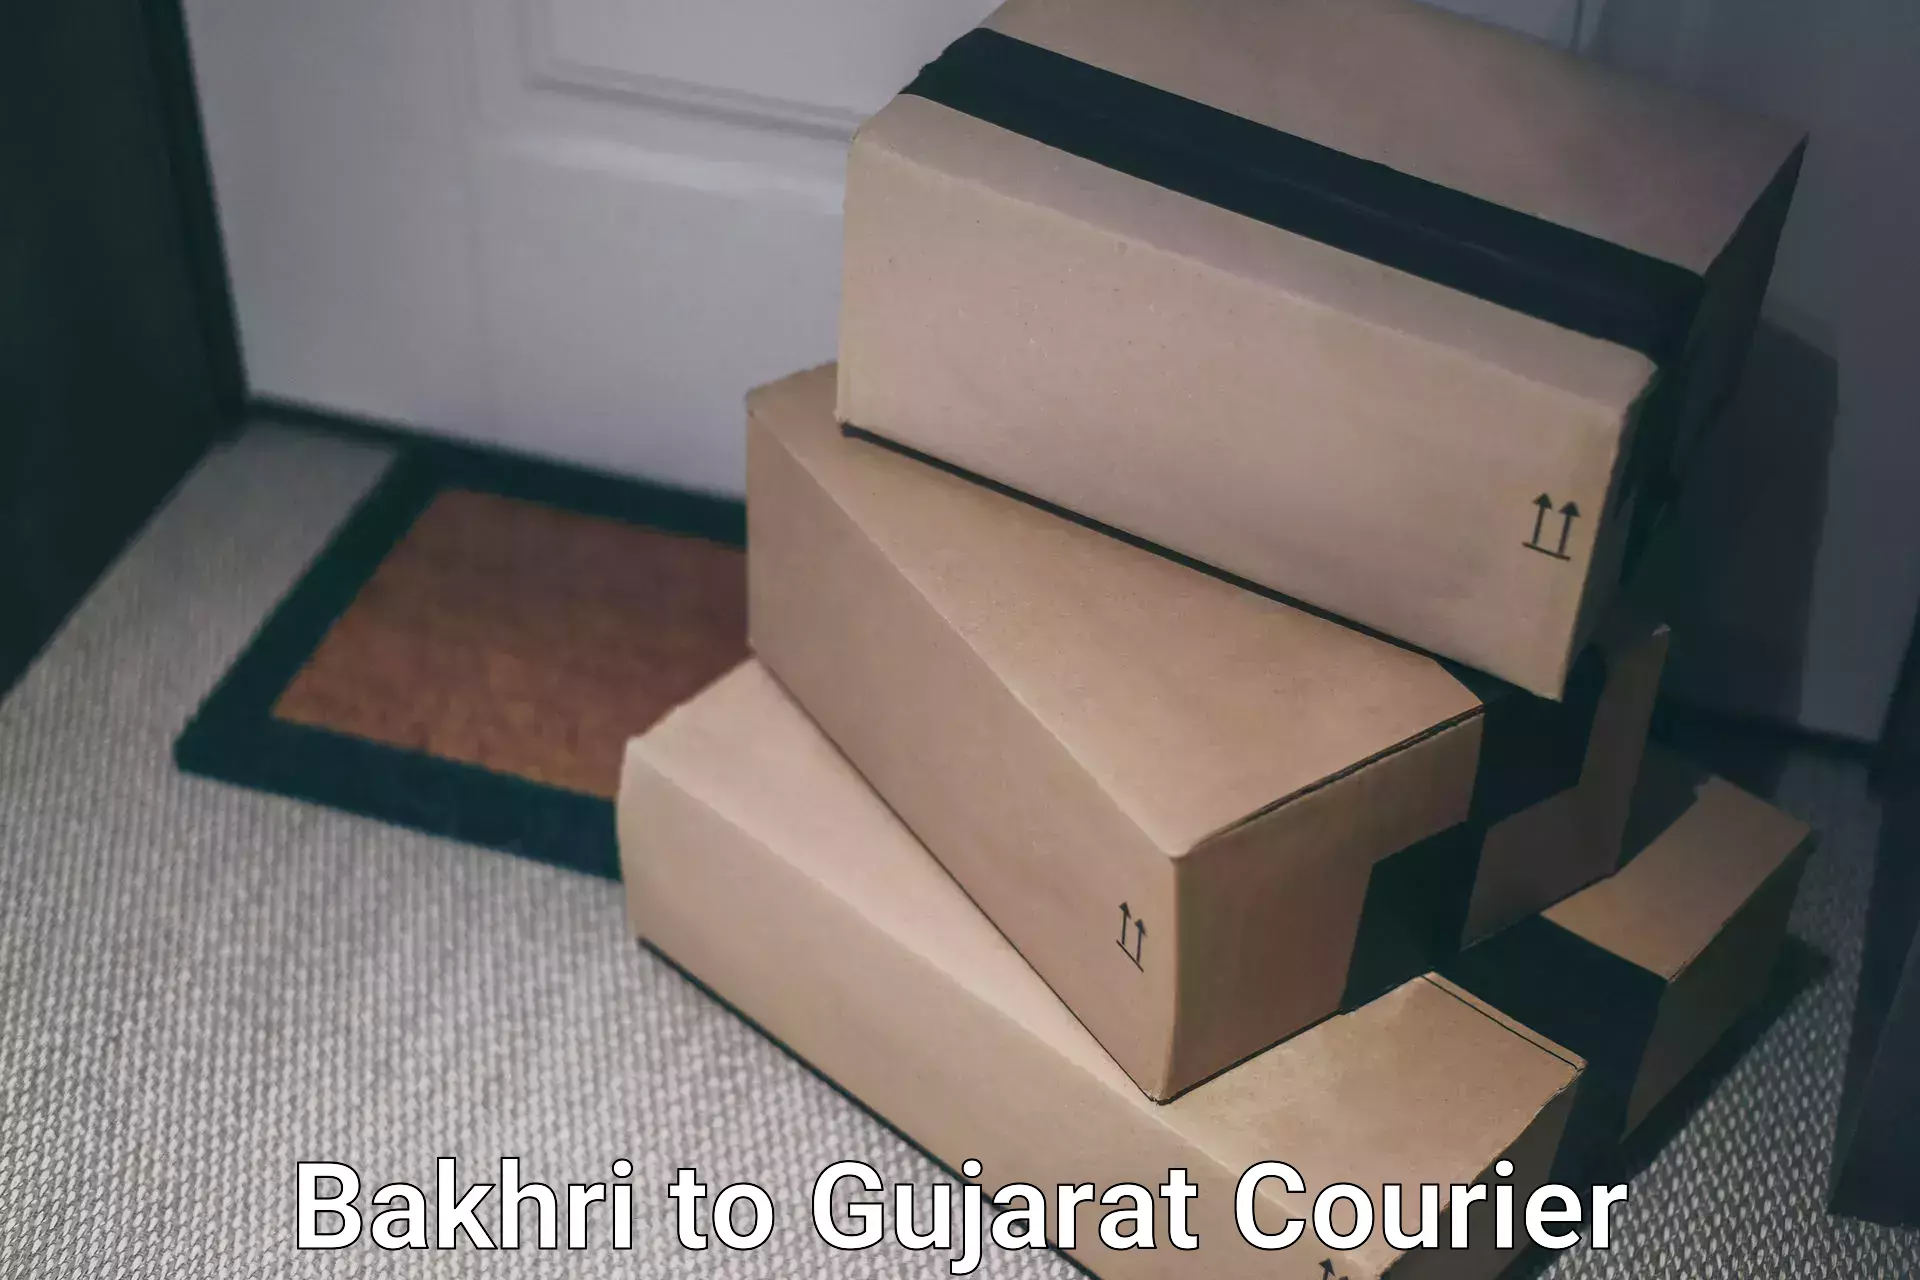 Seamless shipping service Bakhri to Dayapar